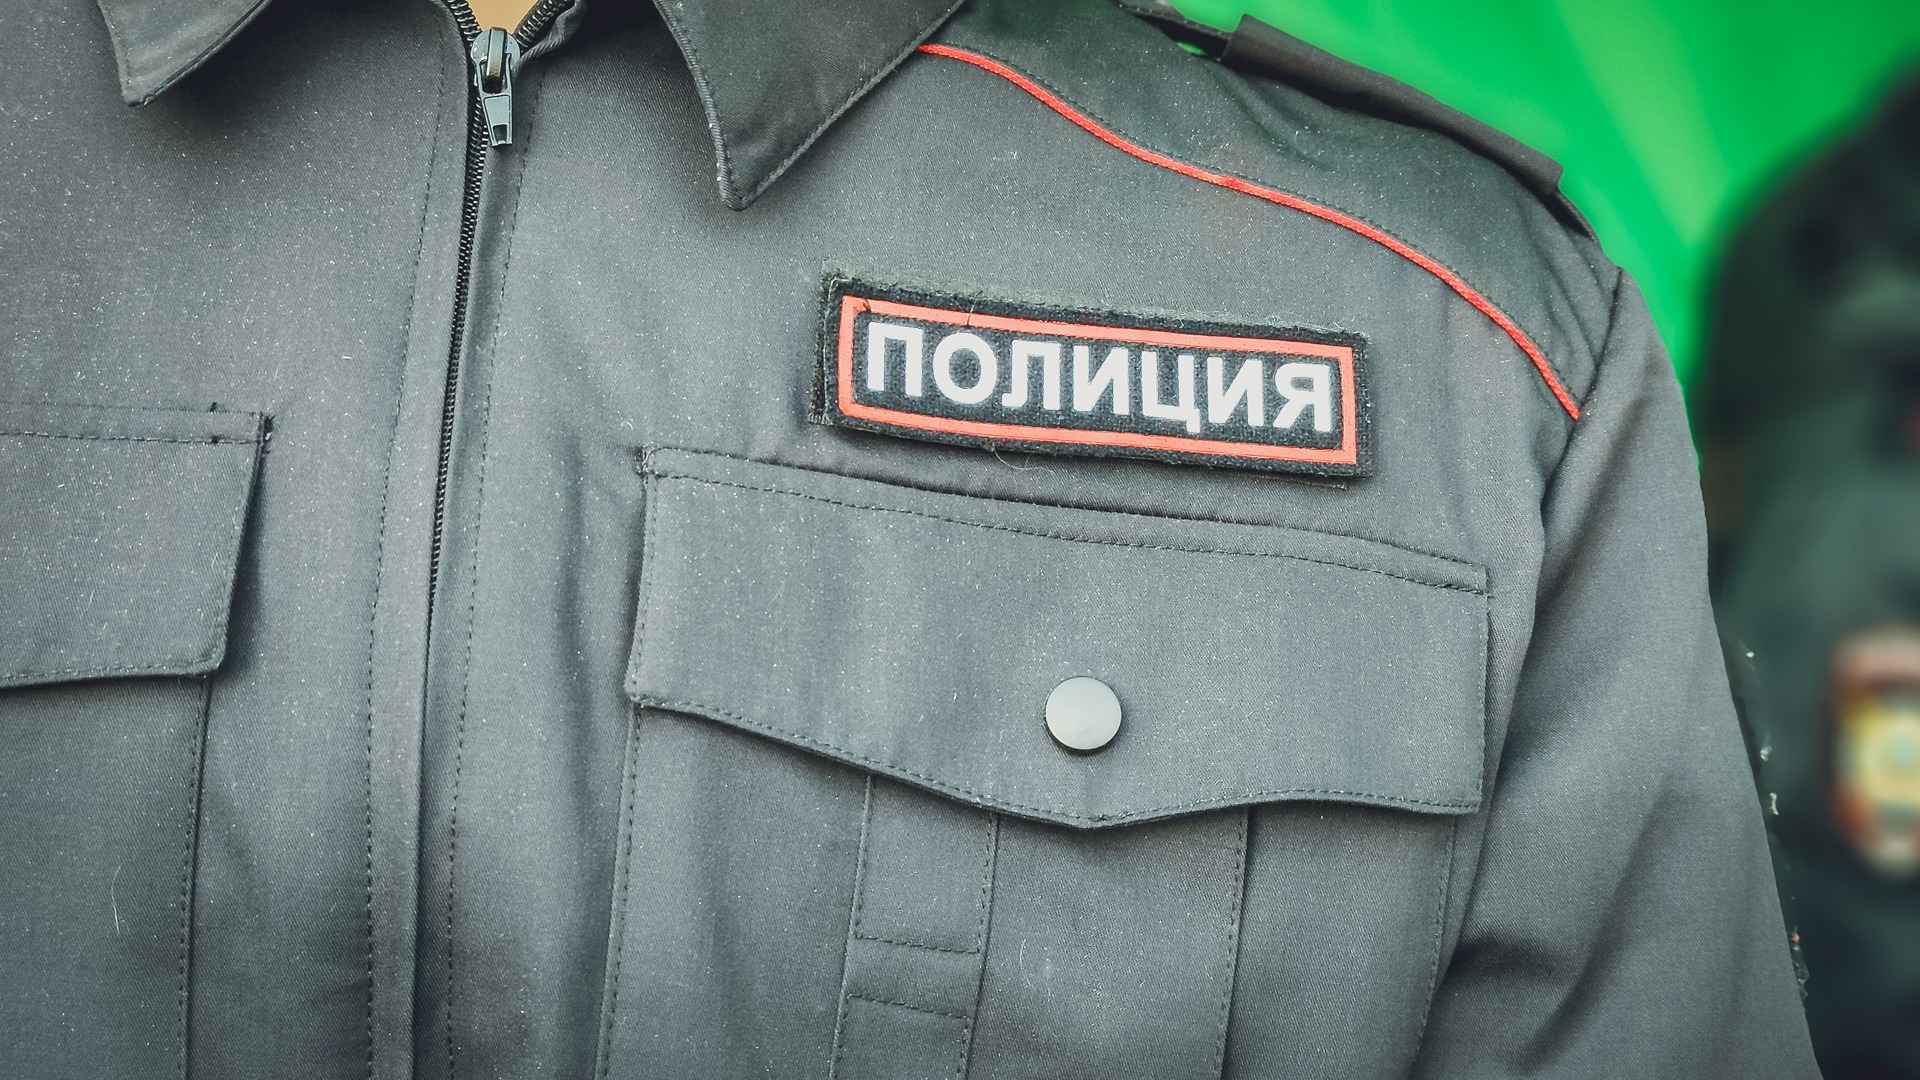 Более 1,5 млн рублей забрали курьеры у пенсионеров во Владивостоке — полиция